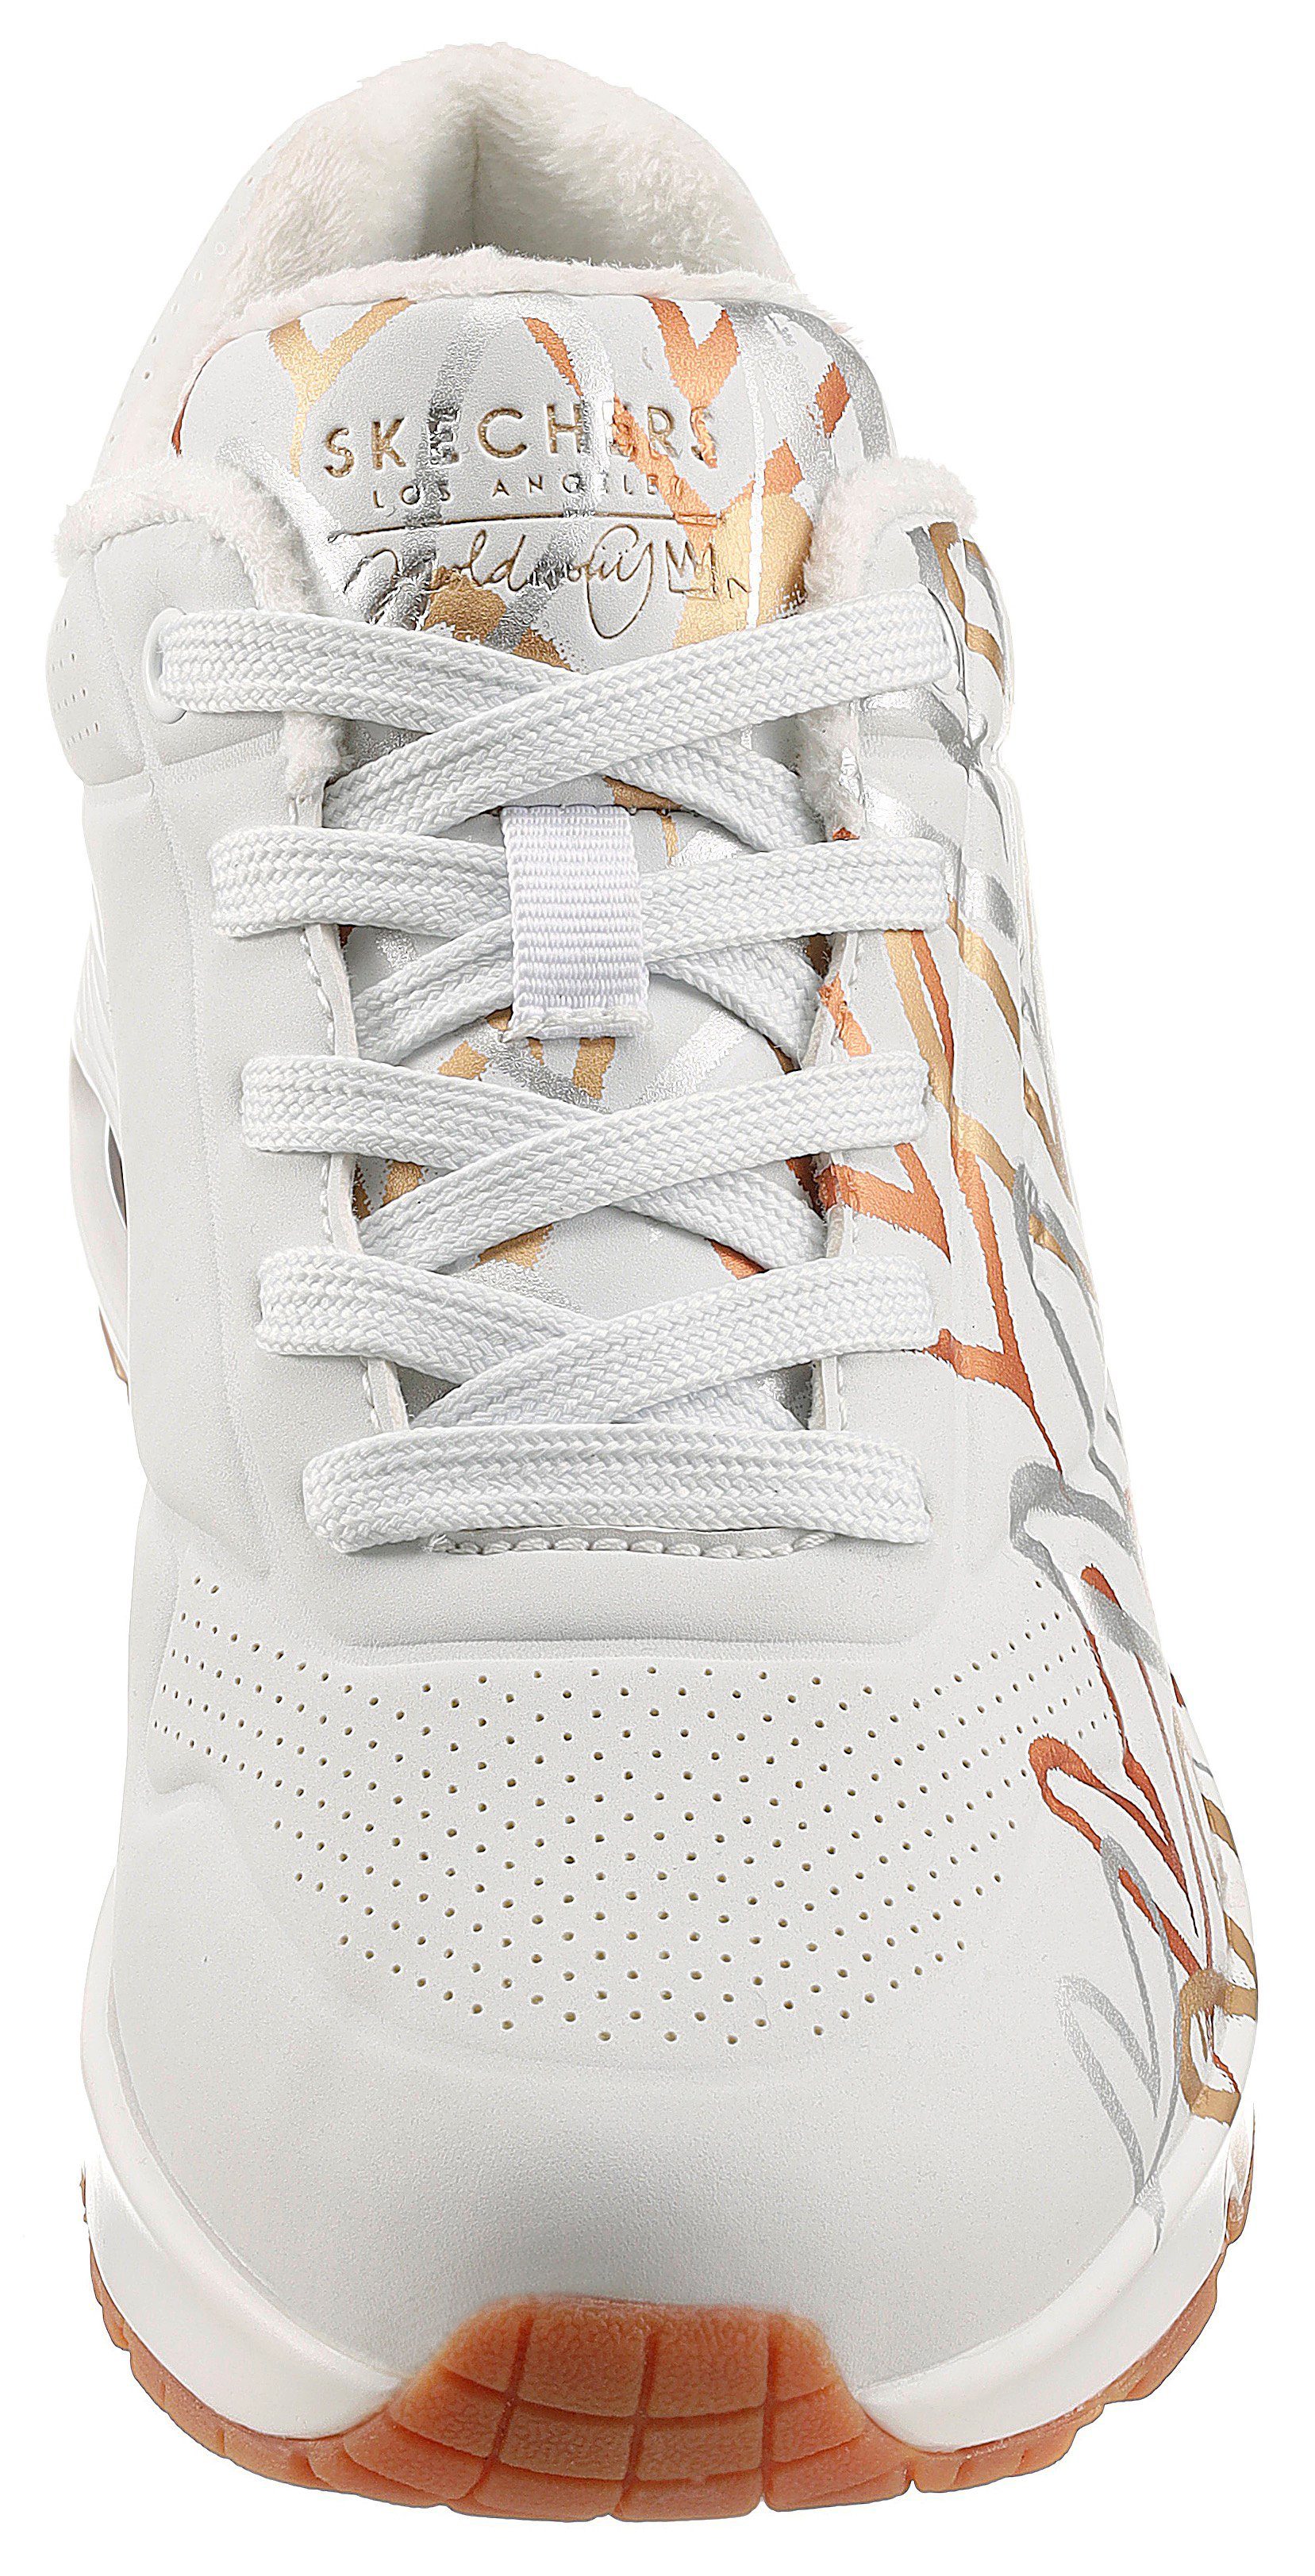 trendigen mit METALLIC Skechers UNO LOVE Sneaker - Metallic-Print weiß-goldfarben